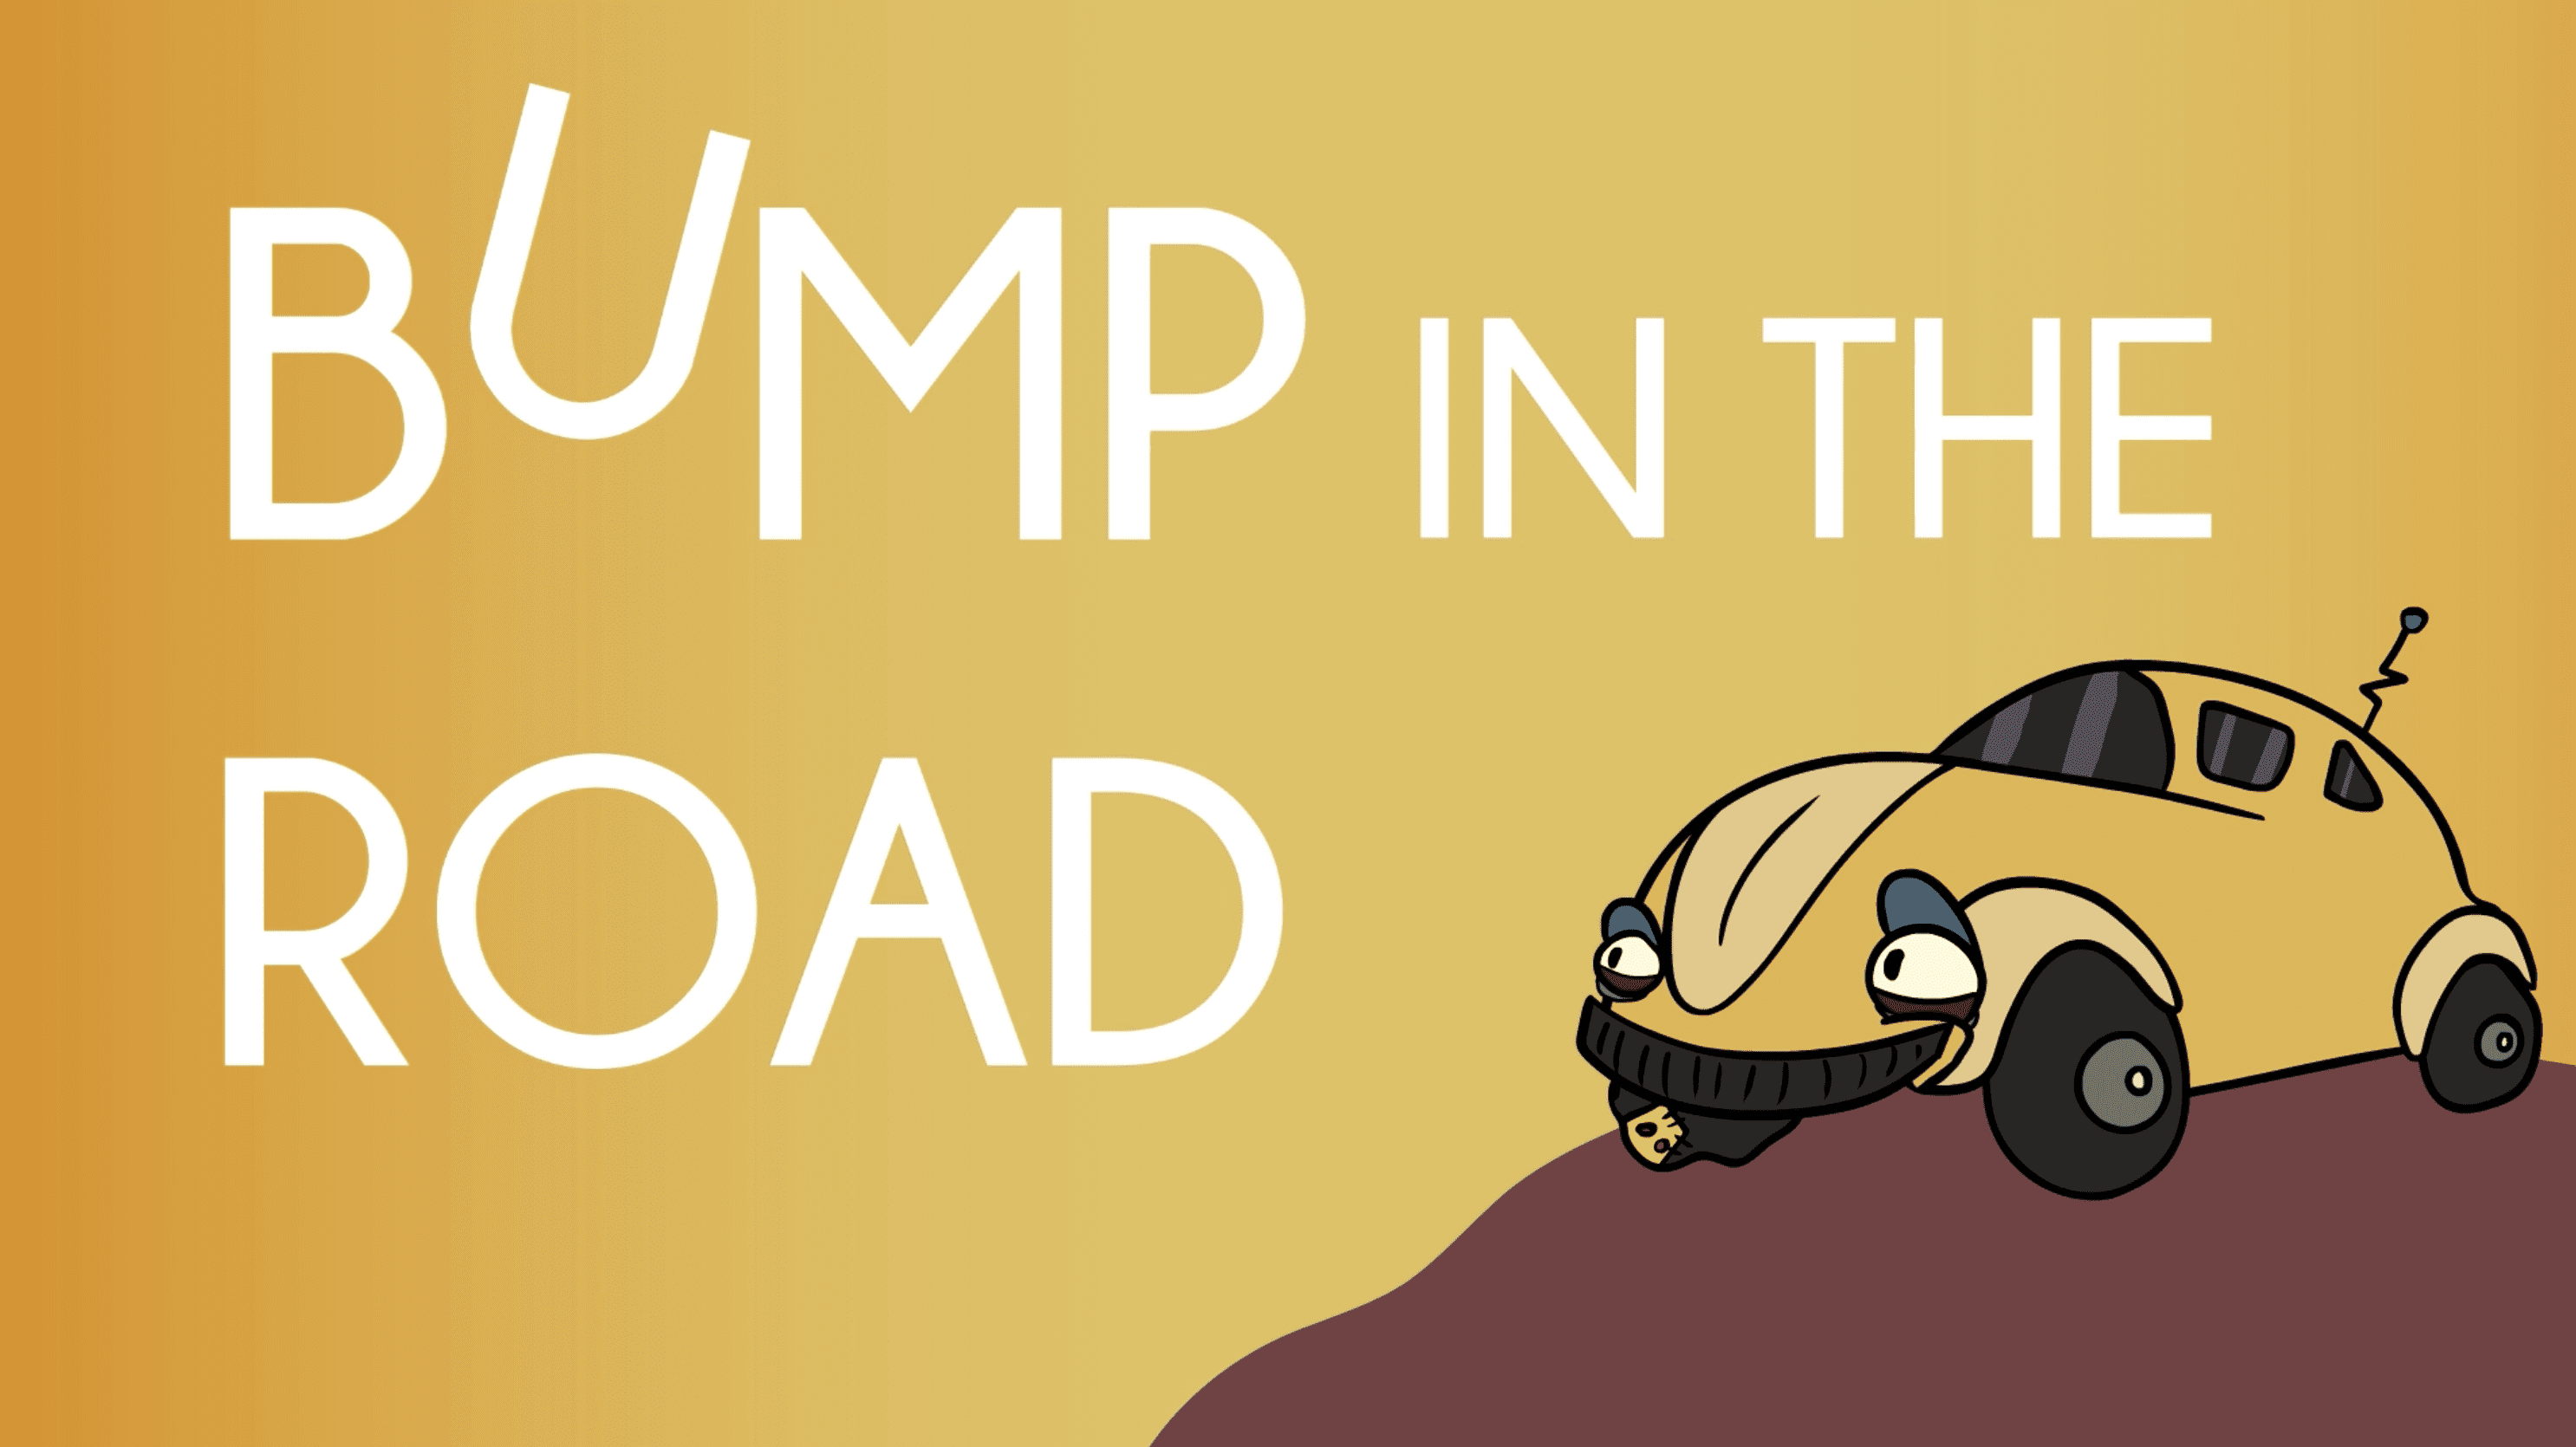 a bumpy road poster